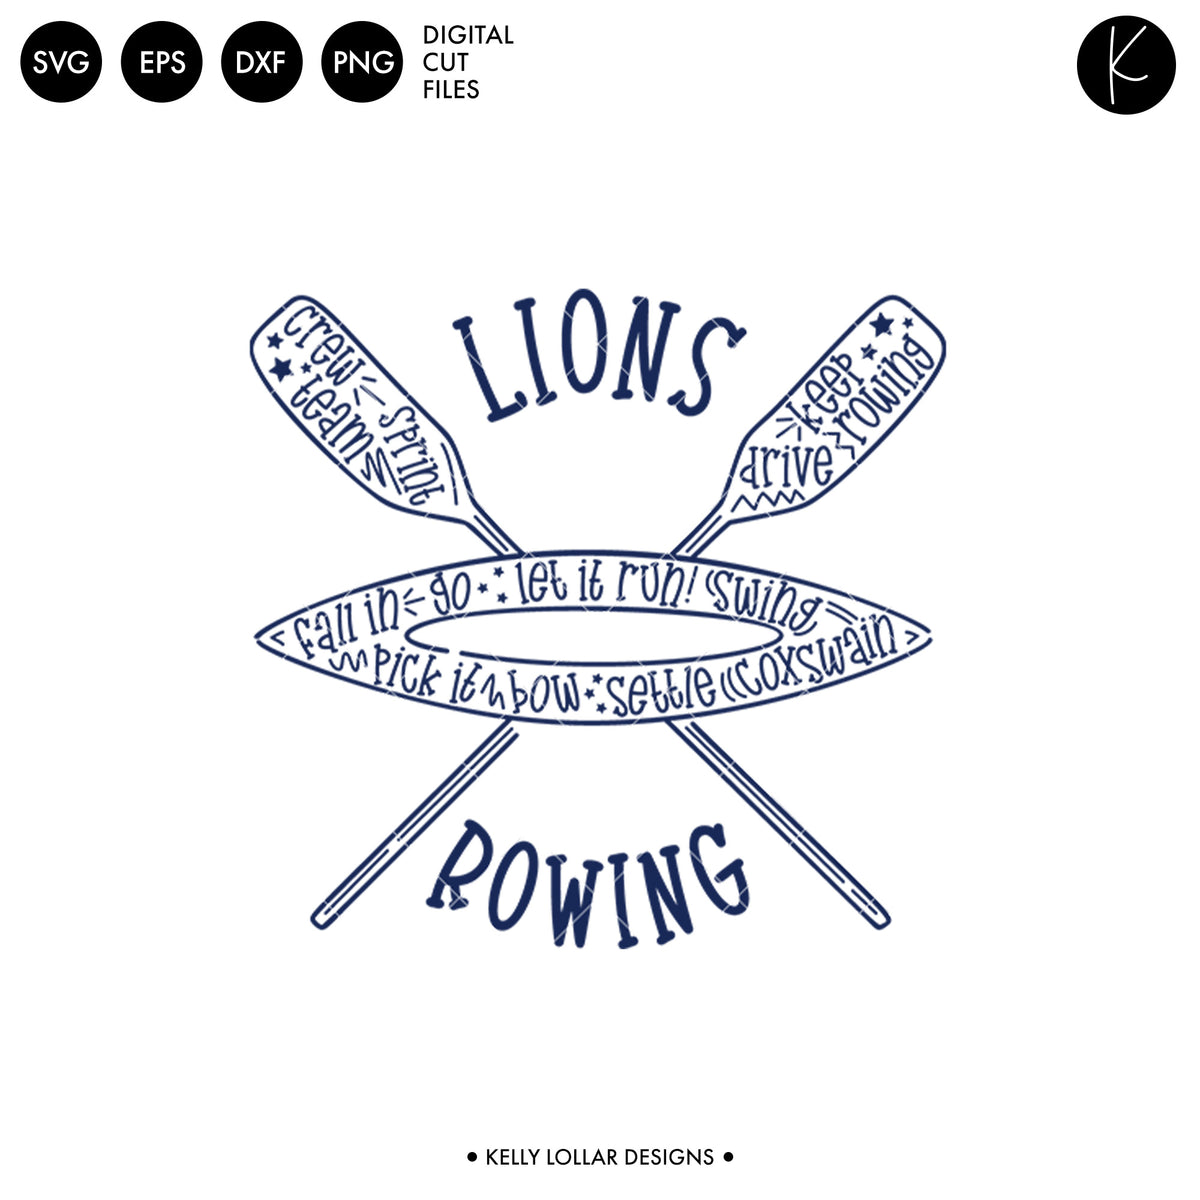 Lions Rowing Crew Bundle | SVG DXF EPS PNG Cut Files